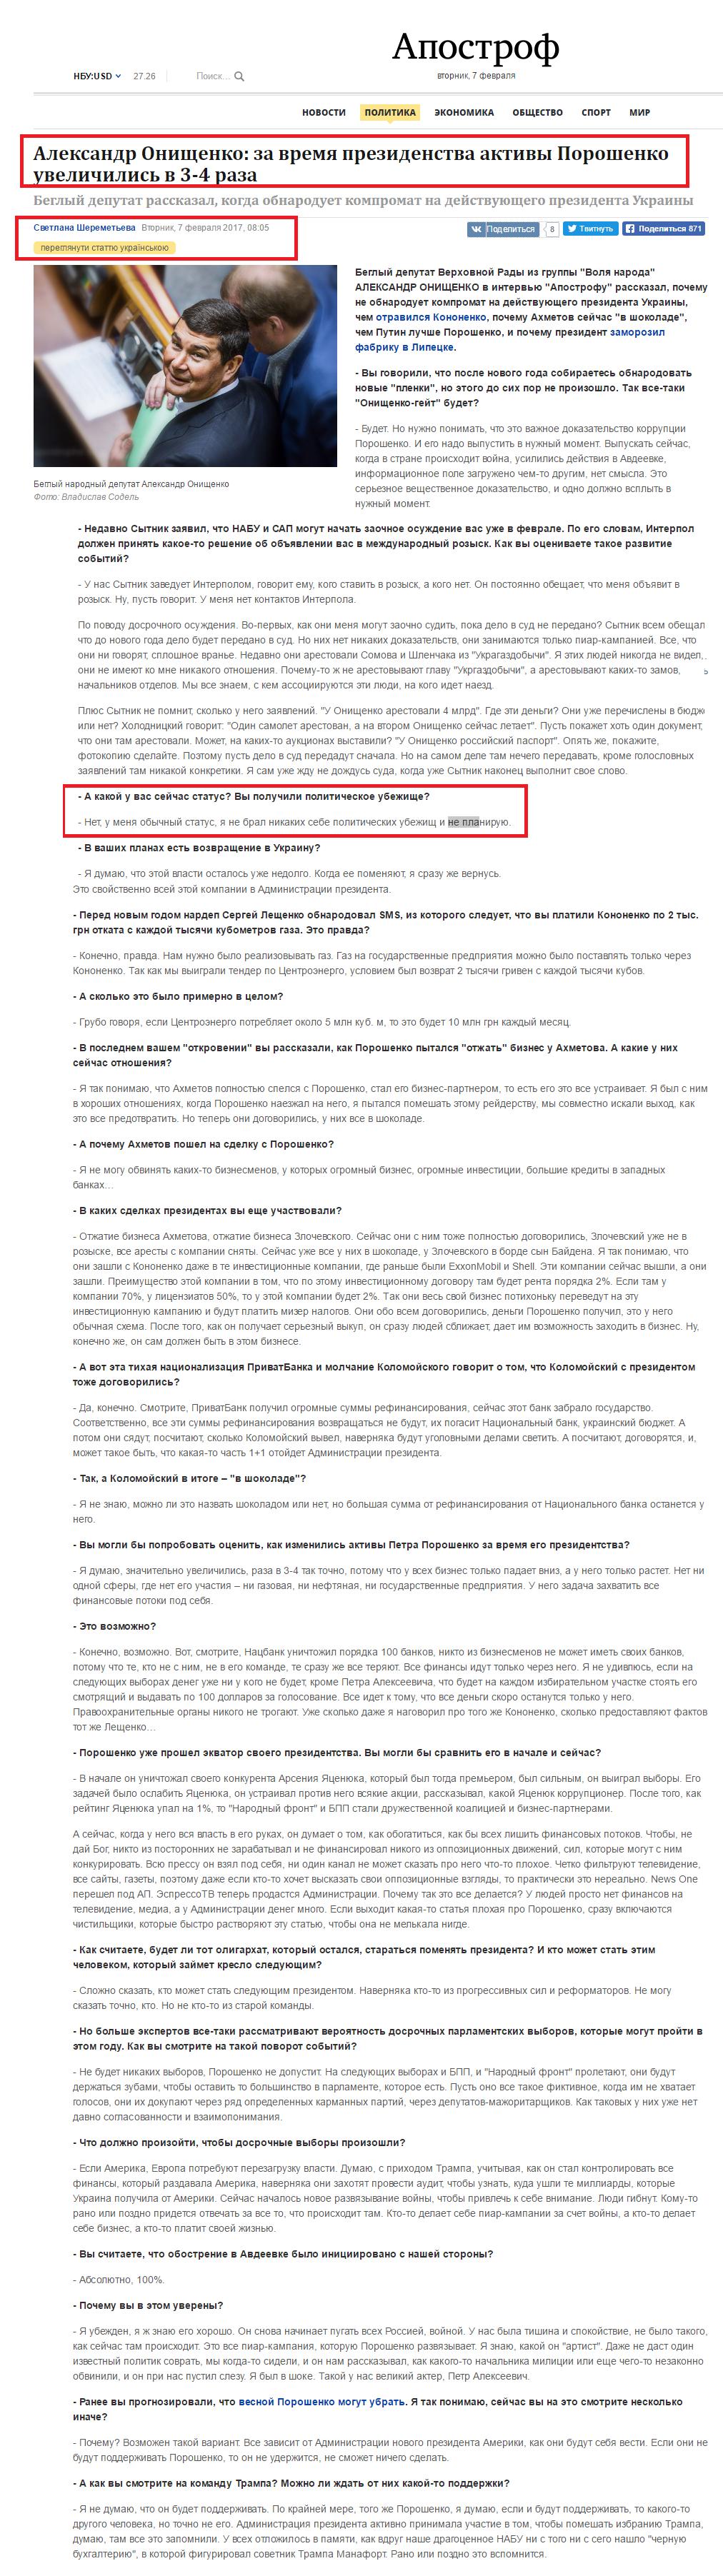 http://apostrophe.ua/article/politics/2017-02-07/aleksandr-onischenko-poroshenko-za-vremya-svoego-prezidentstva-razbogatel-v-3-4-raza/10049